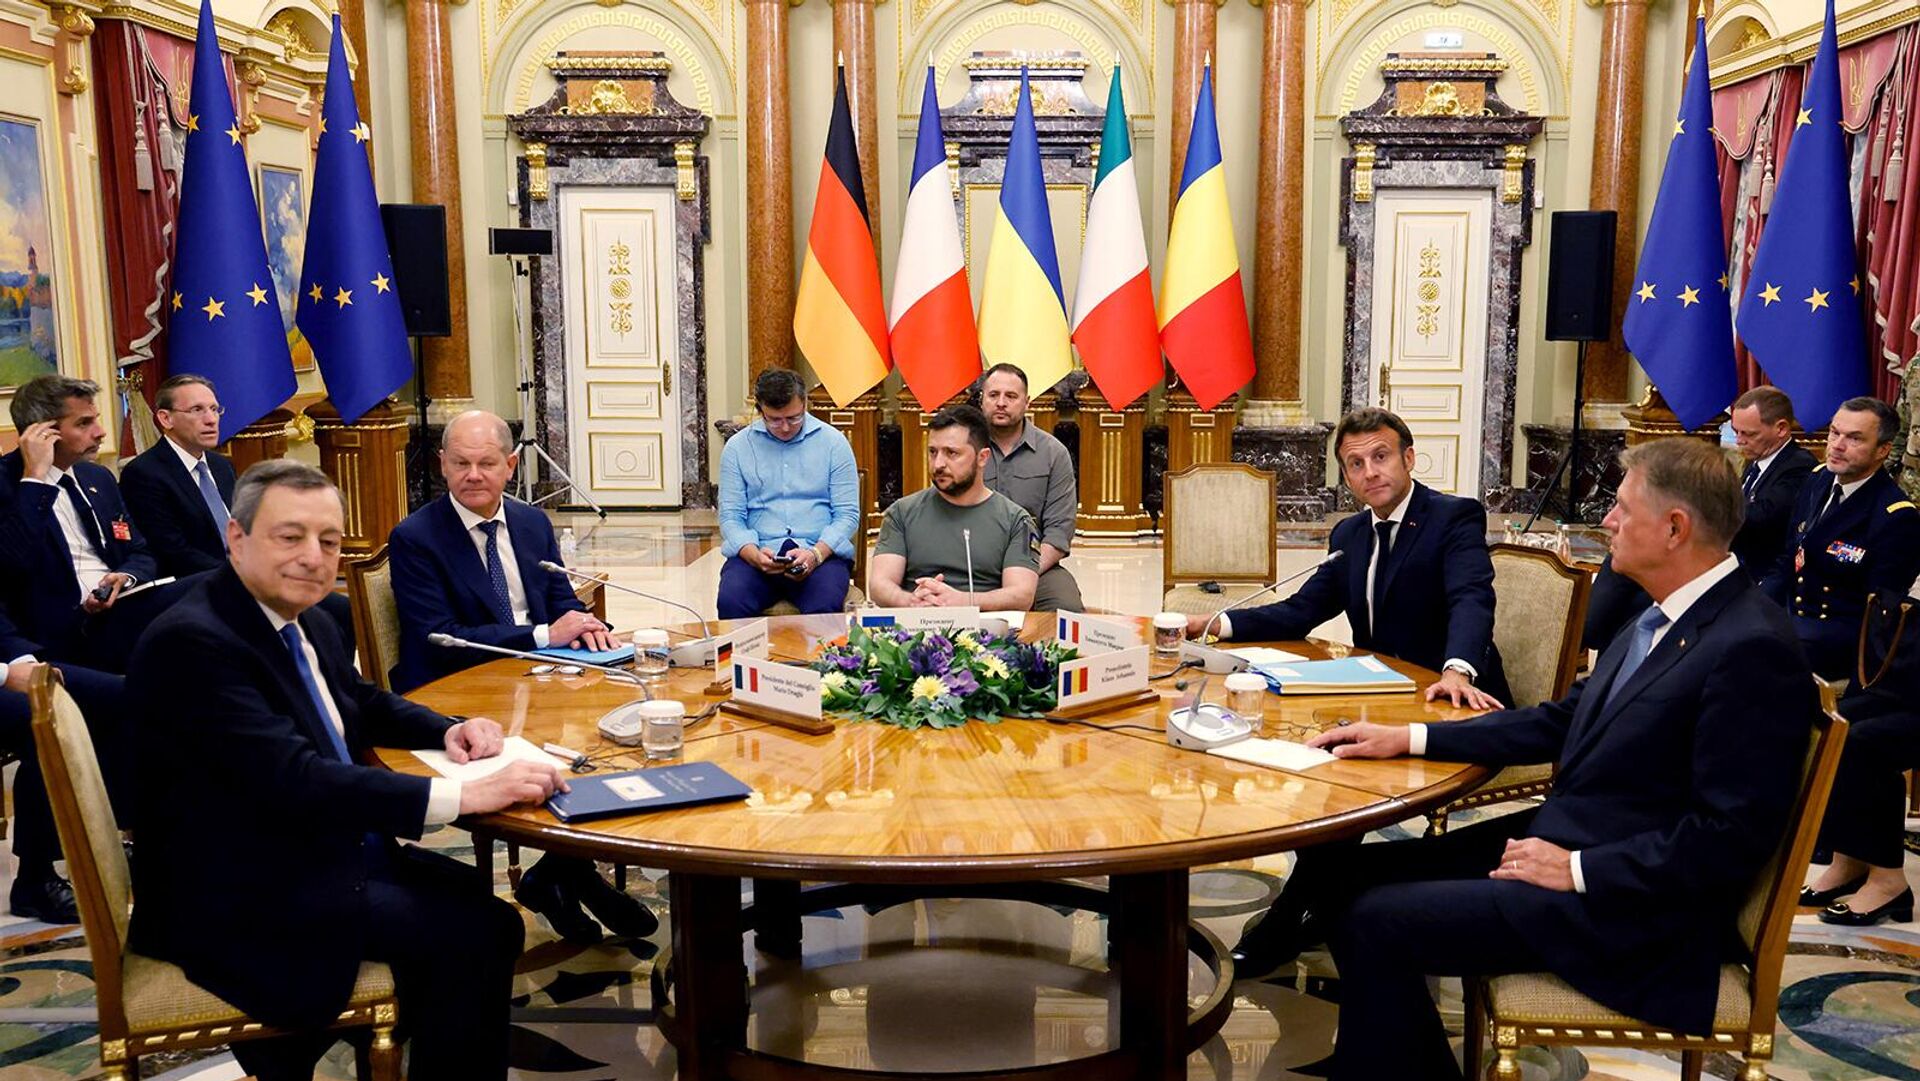 Ուկրաինայի նախագահ Վլադիմիր Զելենսկին Կիևում հանդիպել է Ֆրանսիայի նախագահ Էմանուել Մակրոնի, Գերմանիայի կանցլեր Օլաֆ Շոլցի, Իտալիայի վարչապետ Մարիո Դրագիի և Ռումինիայի նախագահ Կլաուս Յոհանիսի հետ - Sputnik Արմենիա, 1920, 16.06.2022